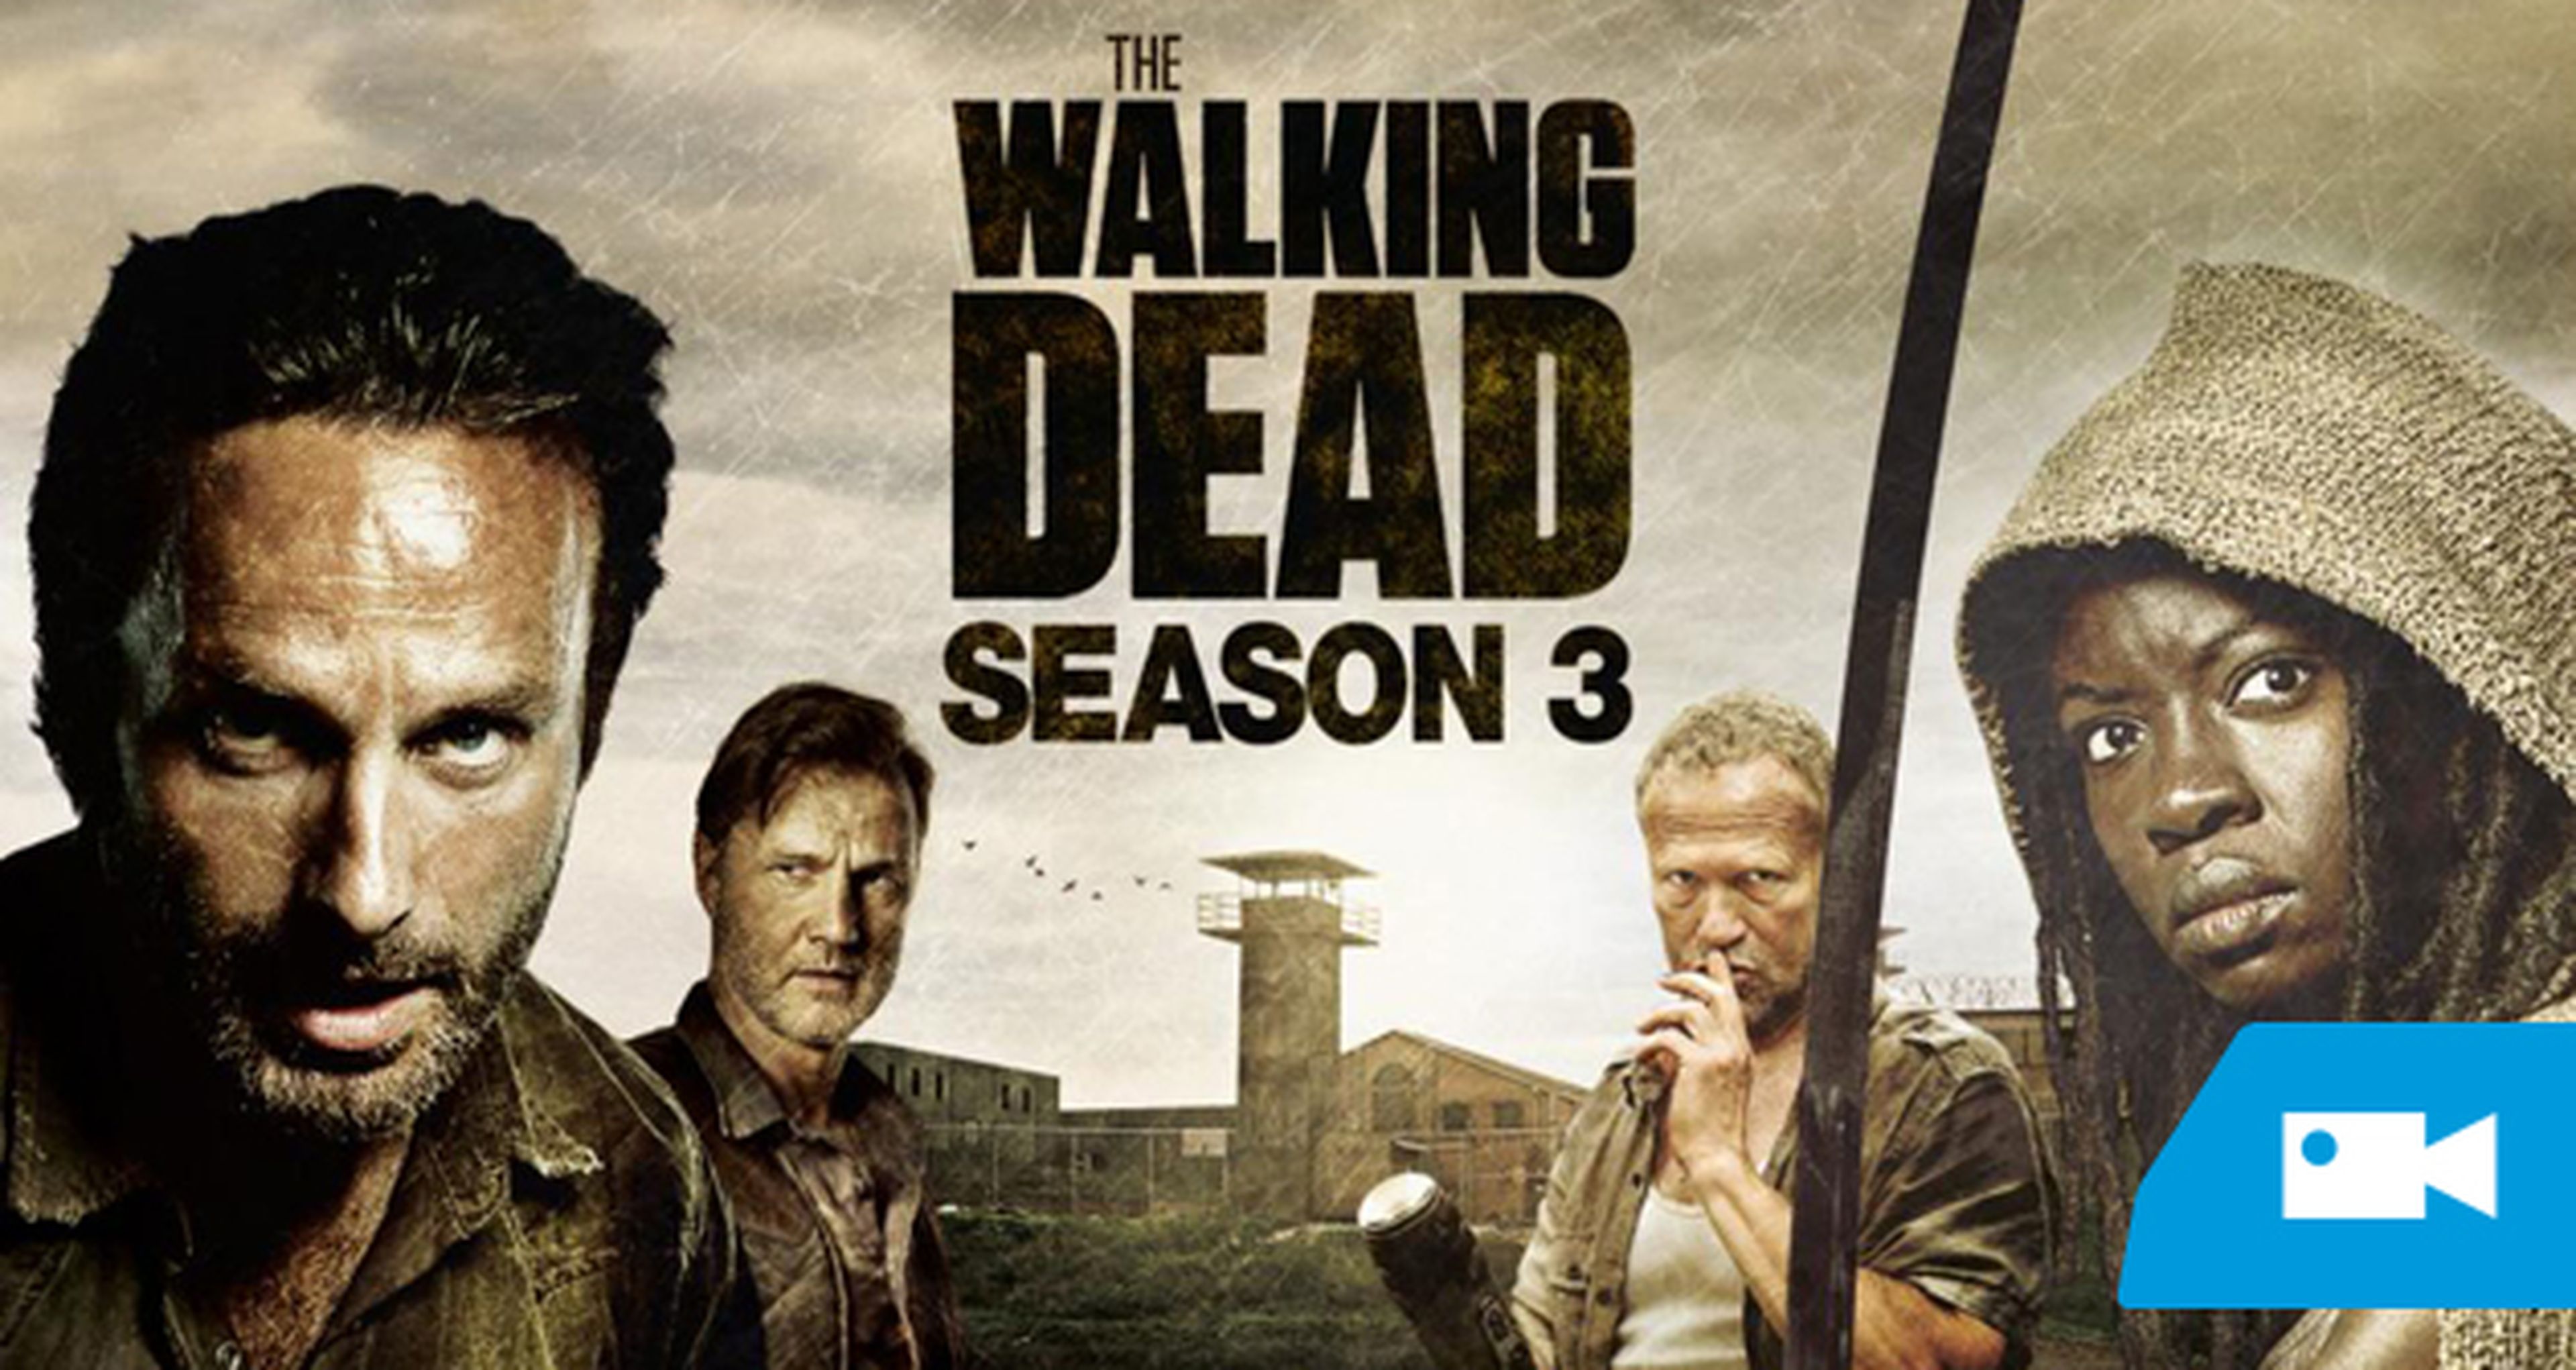 Promos del último episodio de The Walking Dead